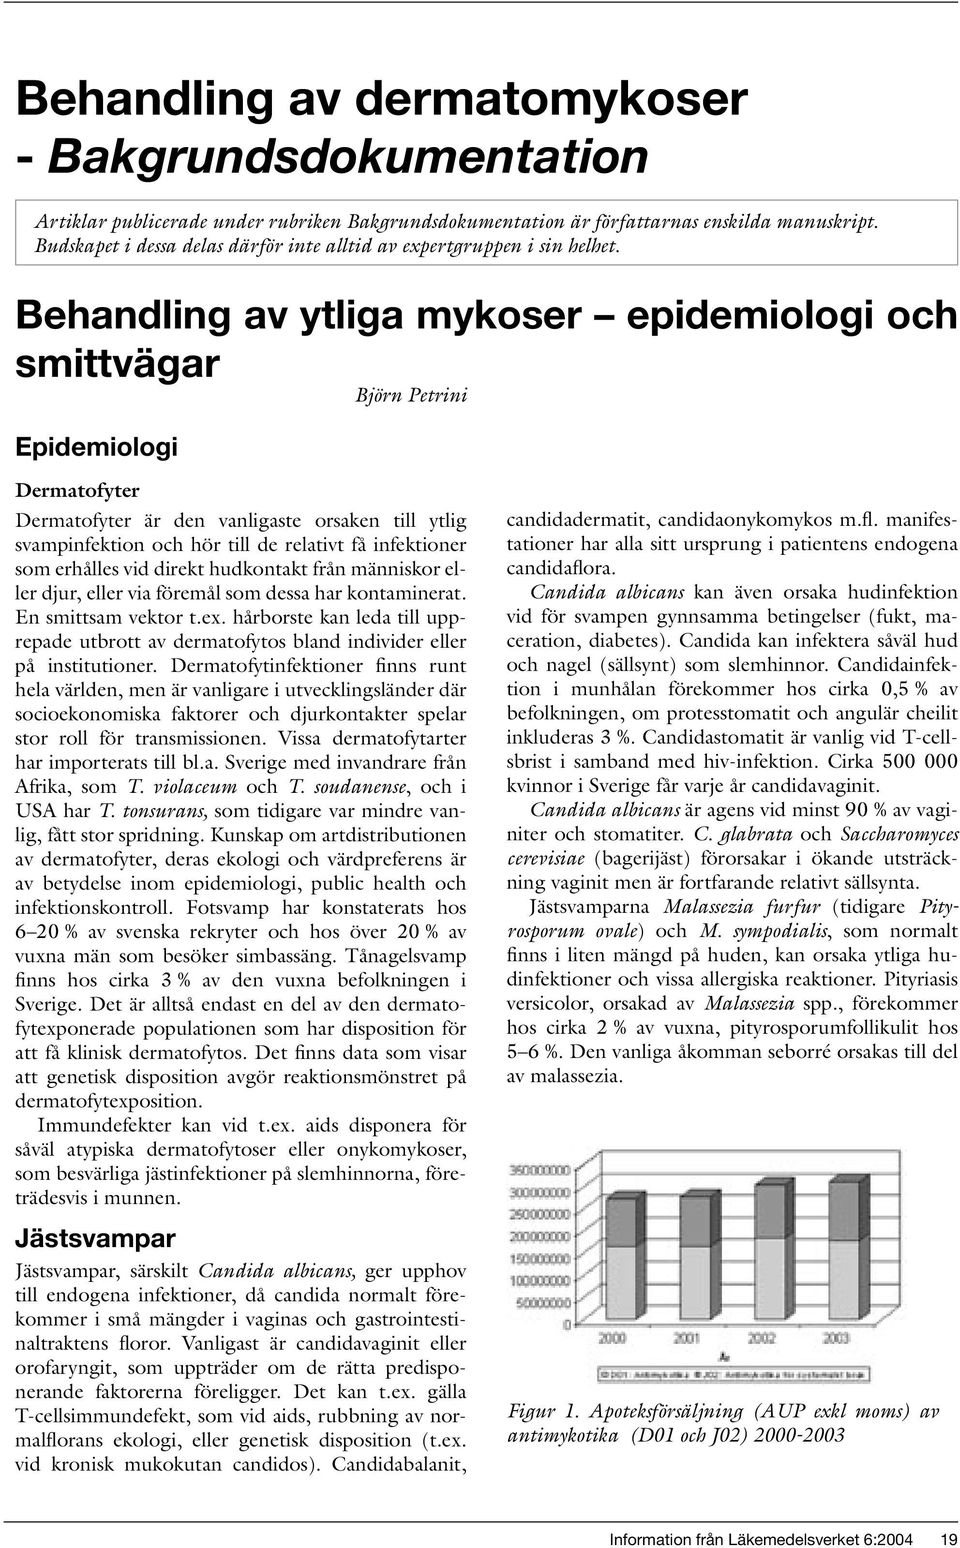 Behandling av ytliga mykoser epidemiologi och smittvägar Epidemiologi Björn Petrini Dermatofyter Dermatofyter är den vanligaste orsaken till ytlig svampinfektion och hör till de relativt få